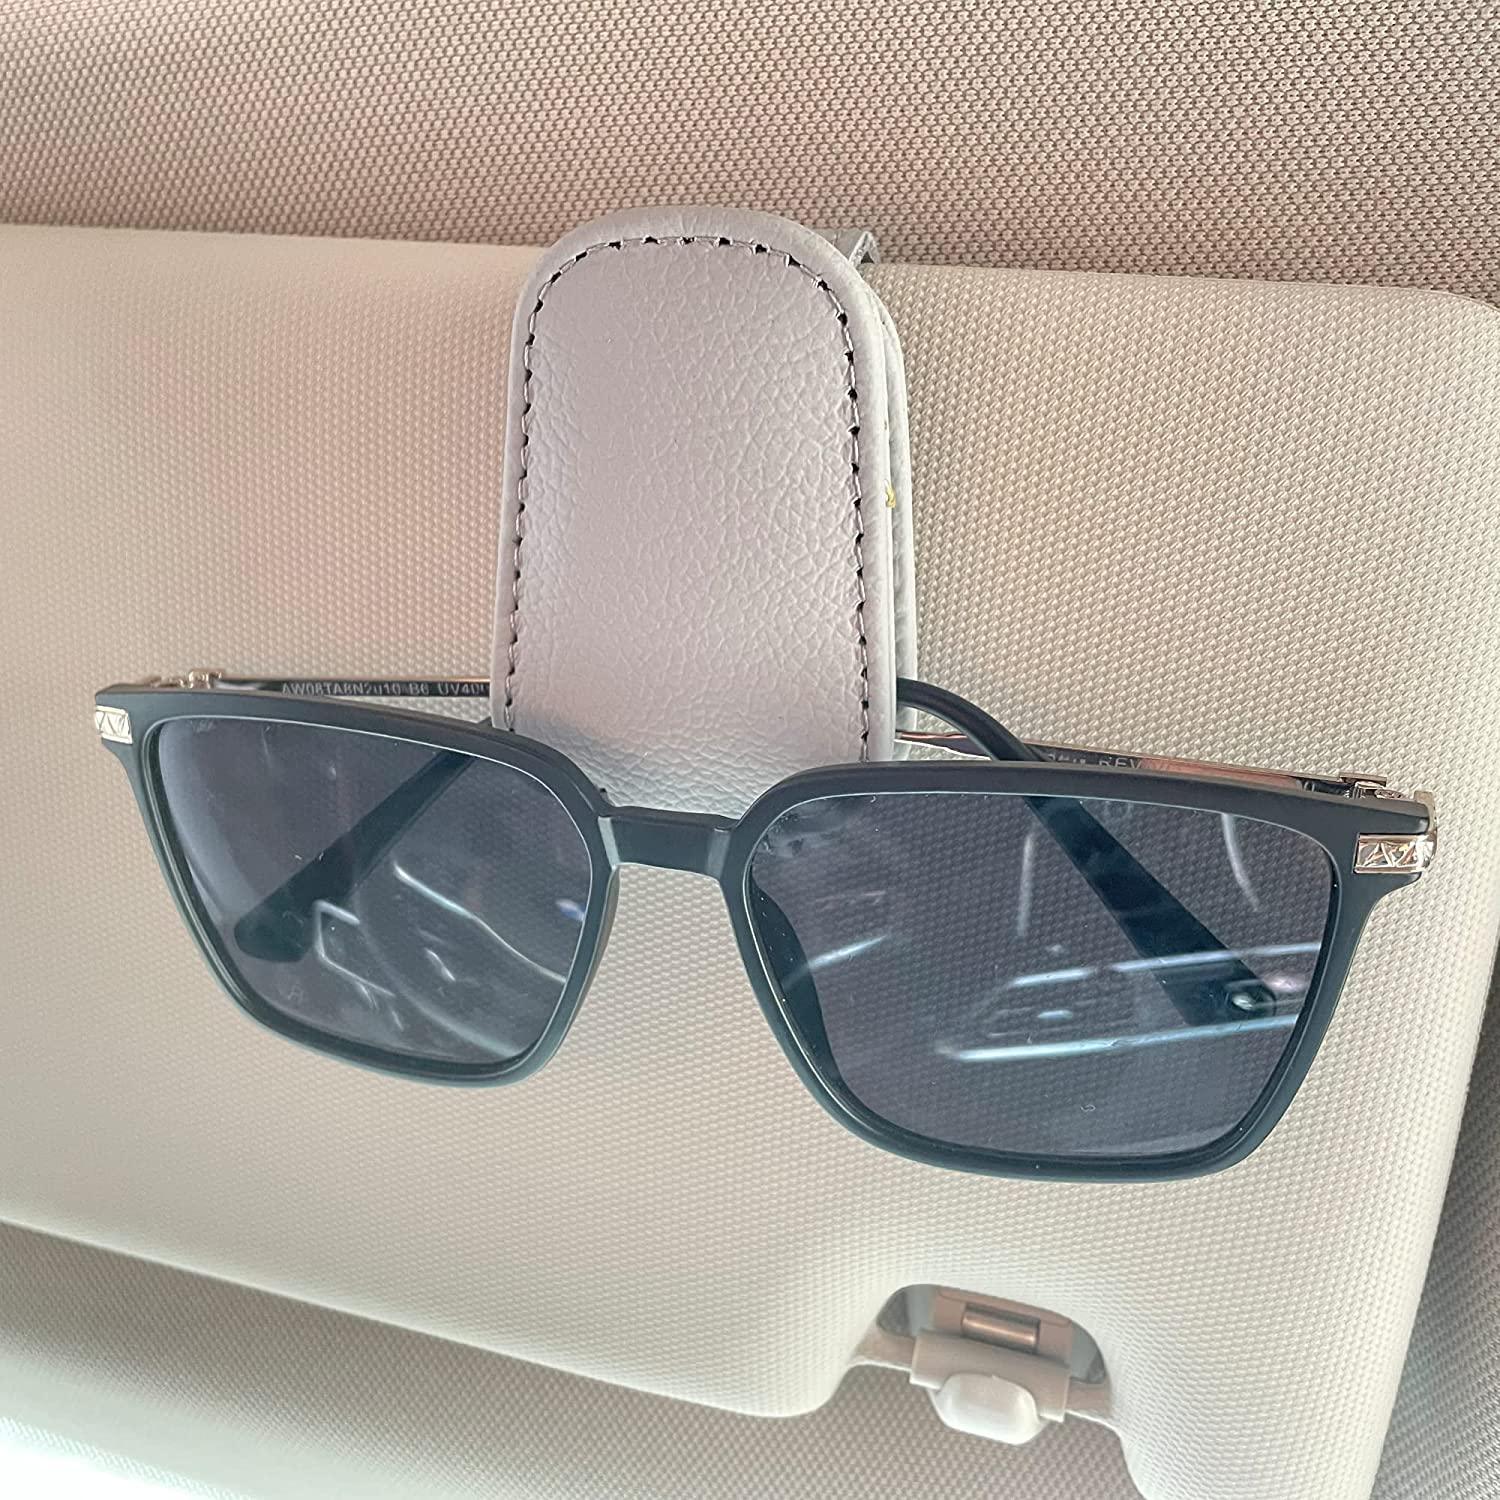 Kinglyday Sunglasses Holders for Car Sun Visor, Magnetic Leather Glasses Eyeglass Hanger Clip for Car, Ticket Card Clip Eyeglasses Mount, Car Visor Accessories - KinglyDay